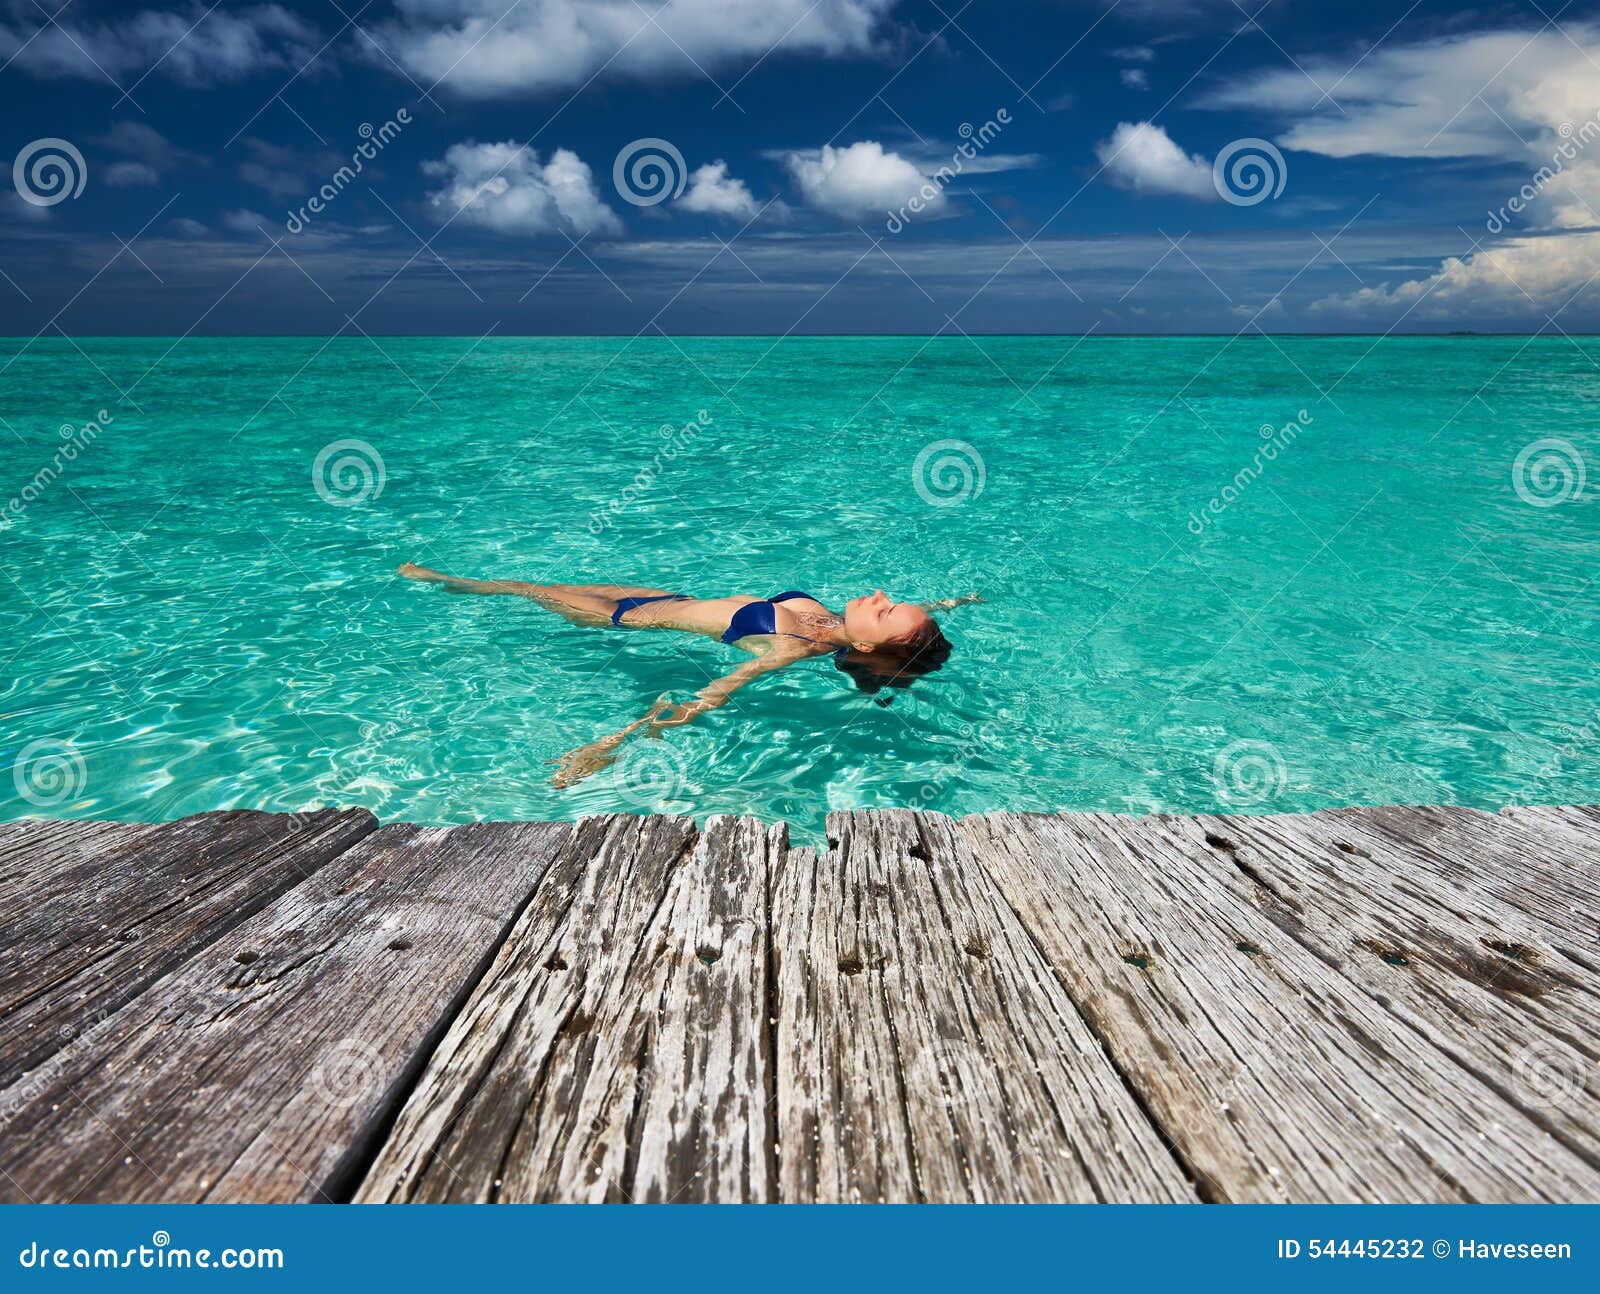 Teen Girl Laying On A Dock In Her Bikini by Stocksy Contributor